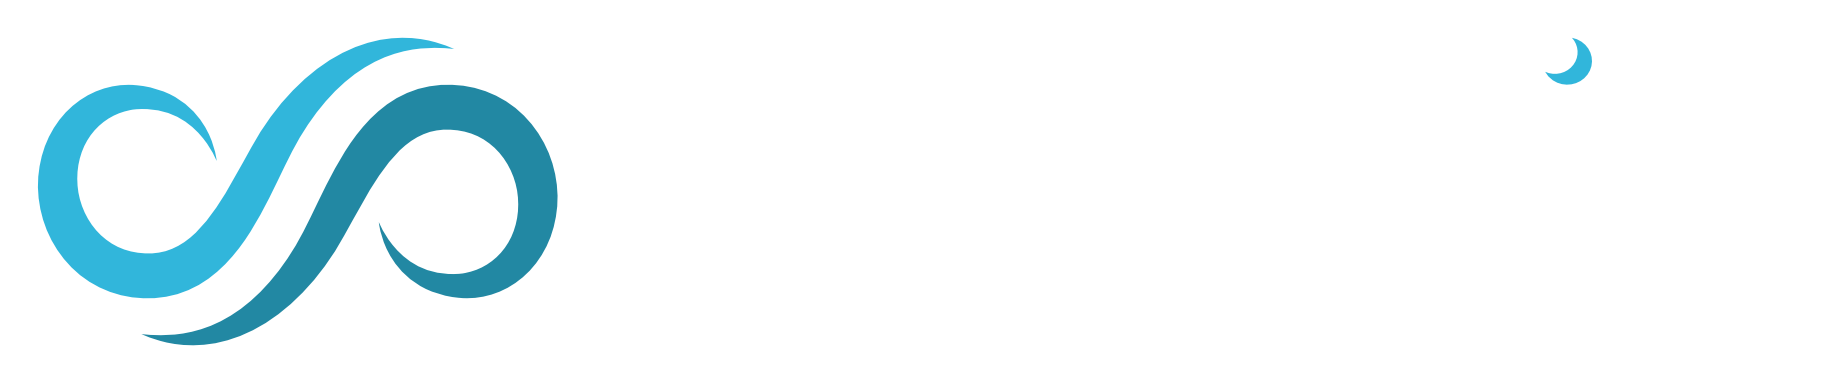 Dreampire - Pokażemy to, o czym marzysz